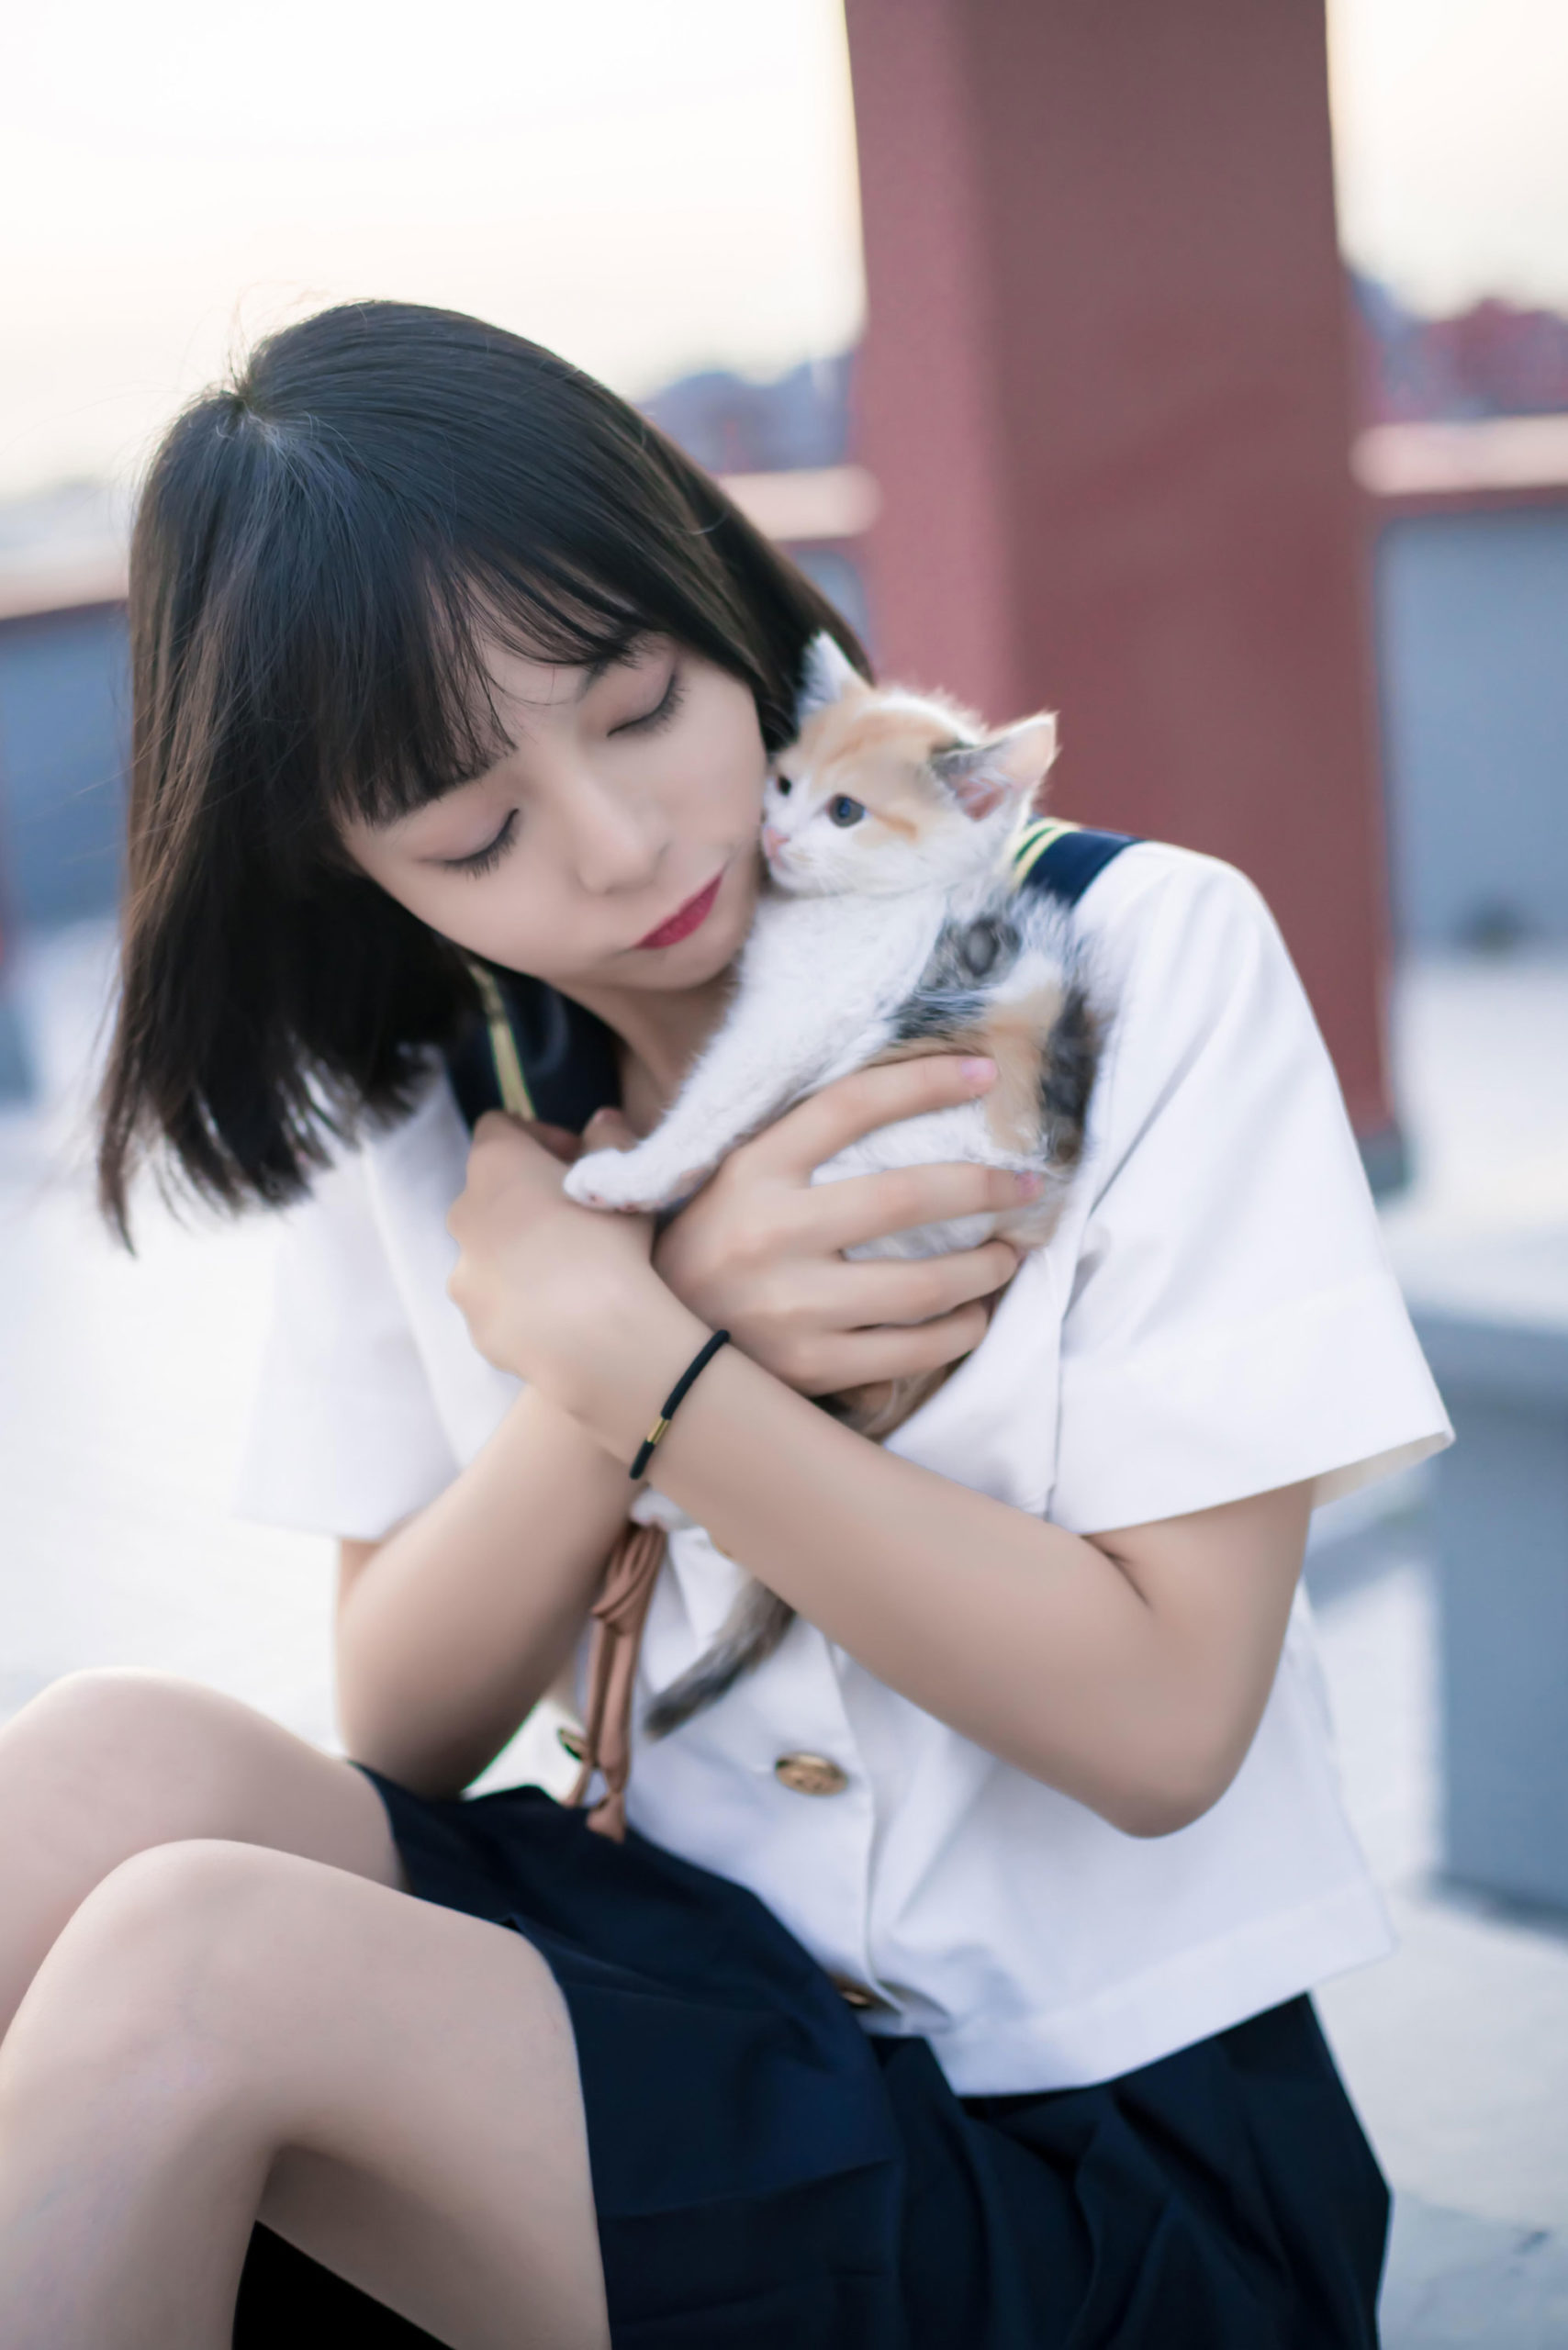 清纯的制服少女与猫写真图集【CN:明明大蓝鲸】